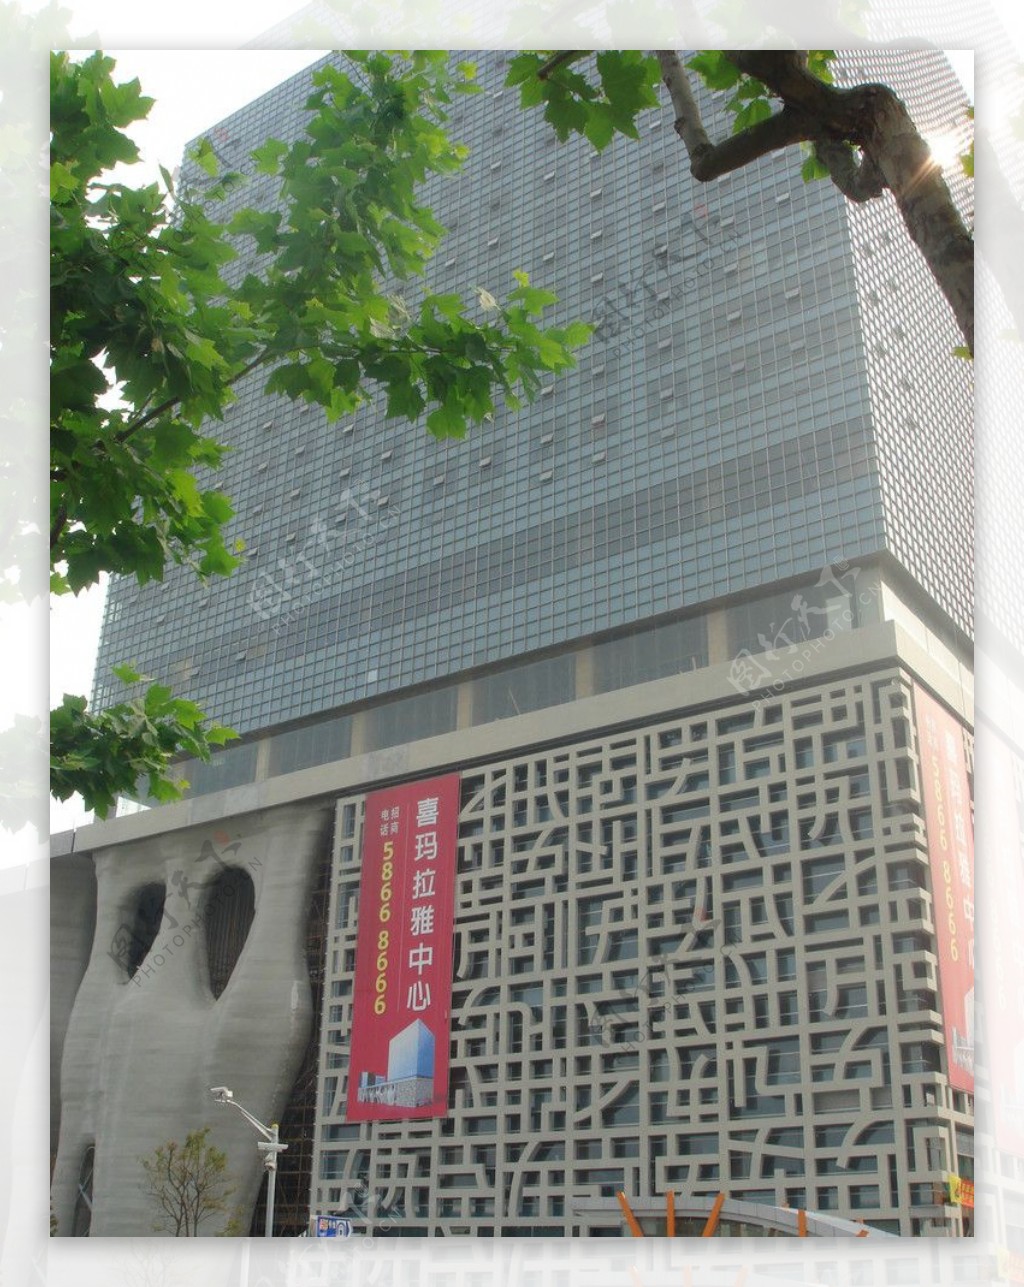 上海喜马拉雅中心图片